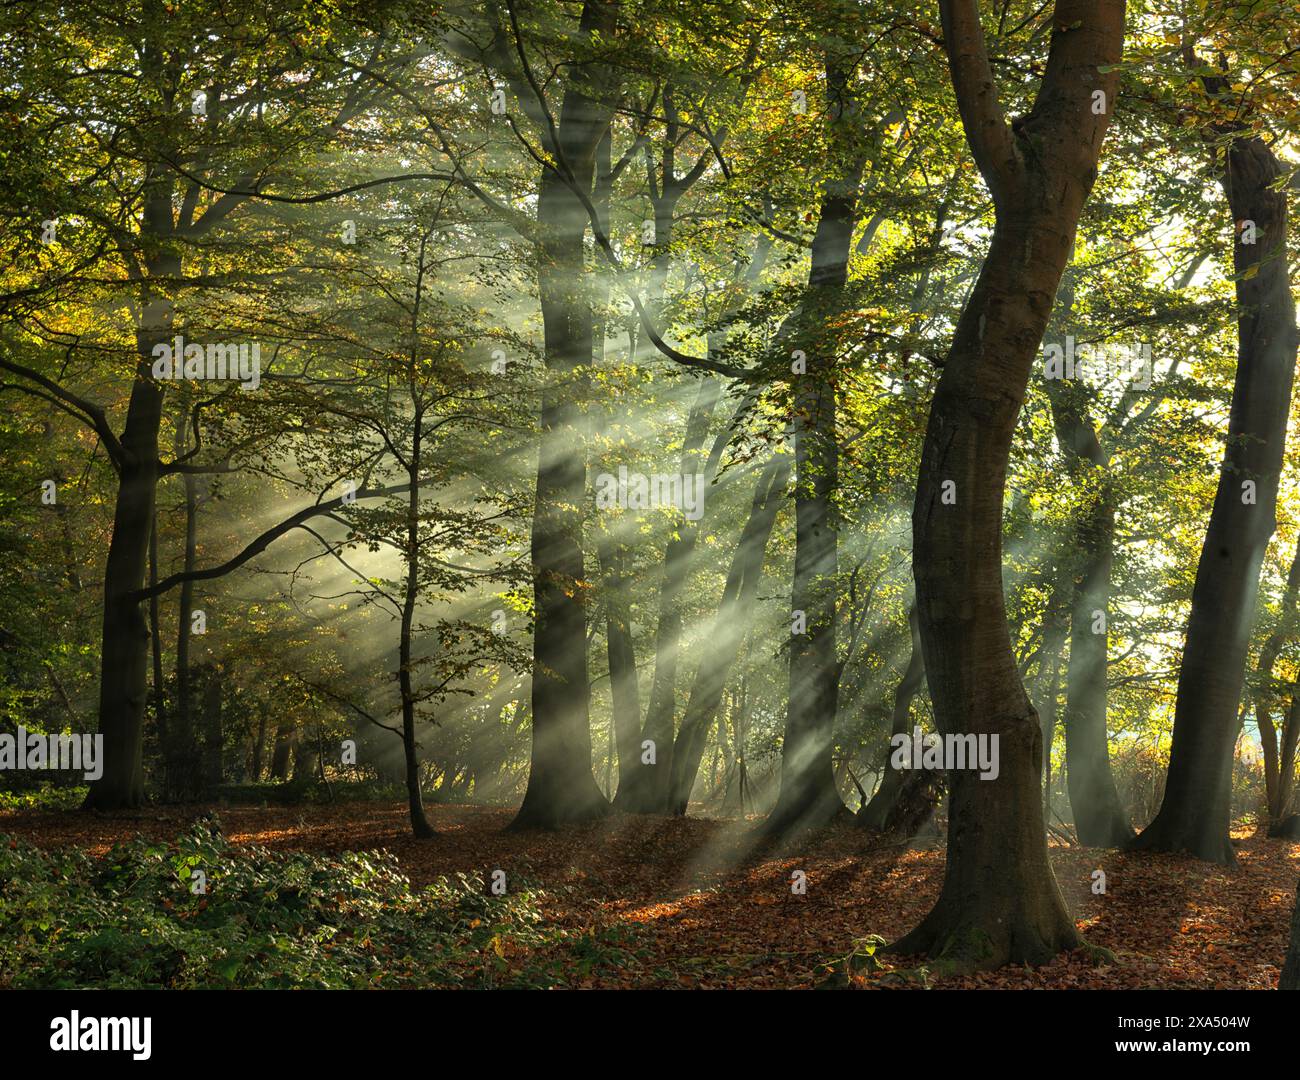 Sonnenstrahlen filtern durch einen ruhigen Wald, beleuchten den Nebel und zeigen das lebhafte Grün und das komplizierte Spiel von Licht und Schatten Stockfoto